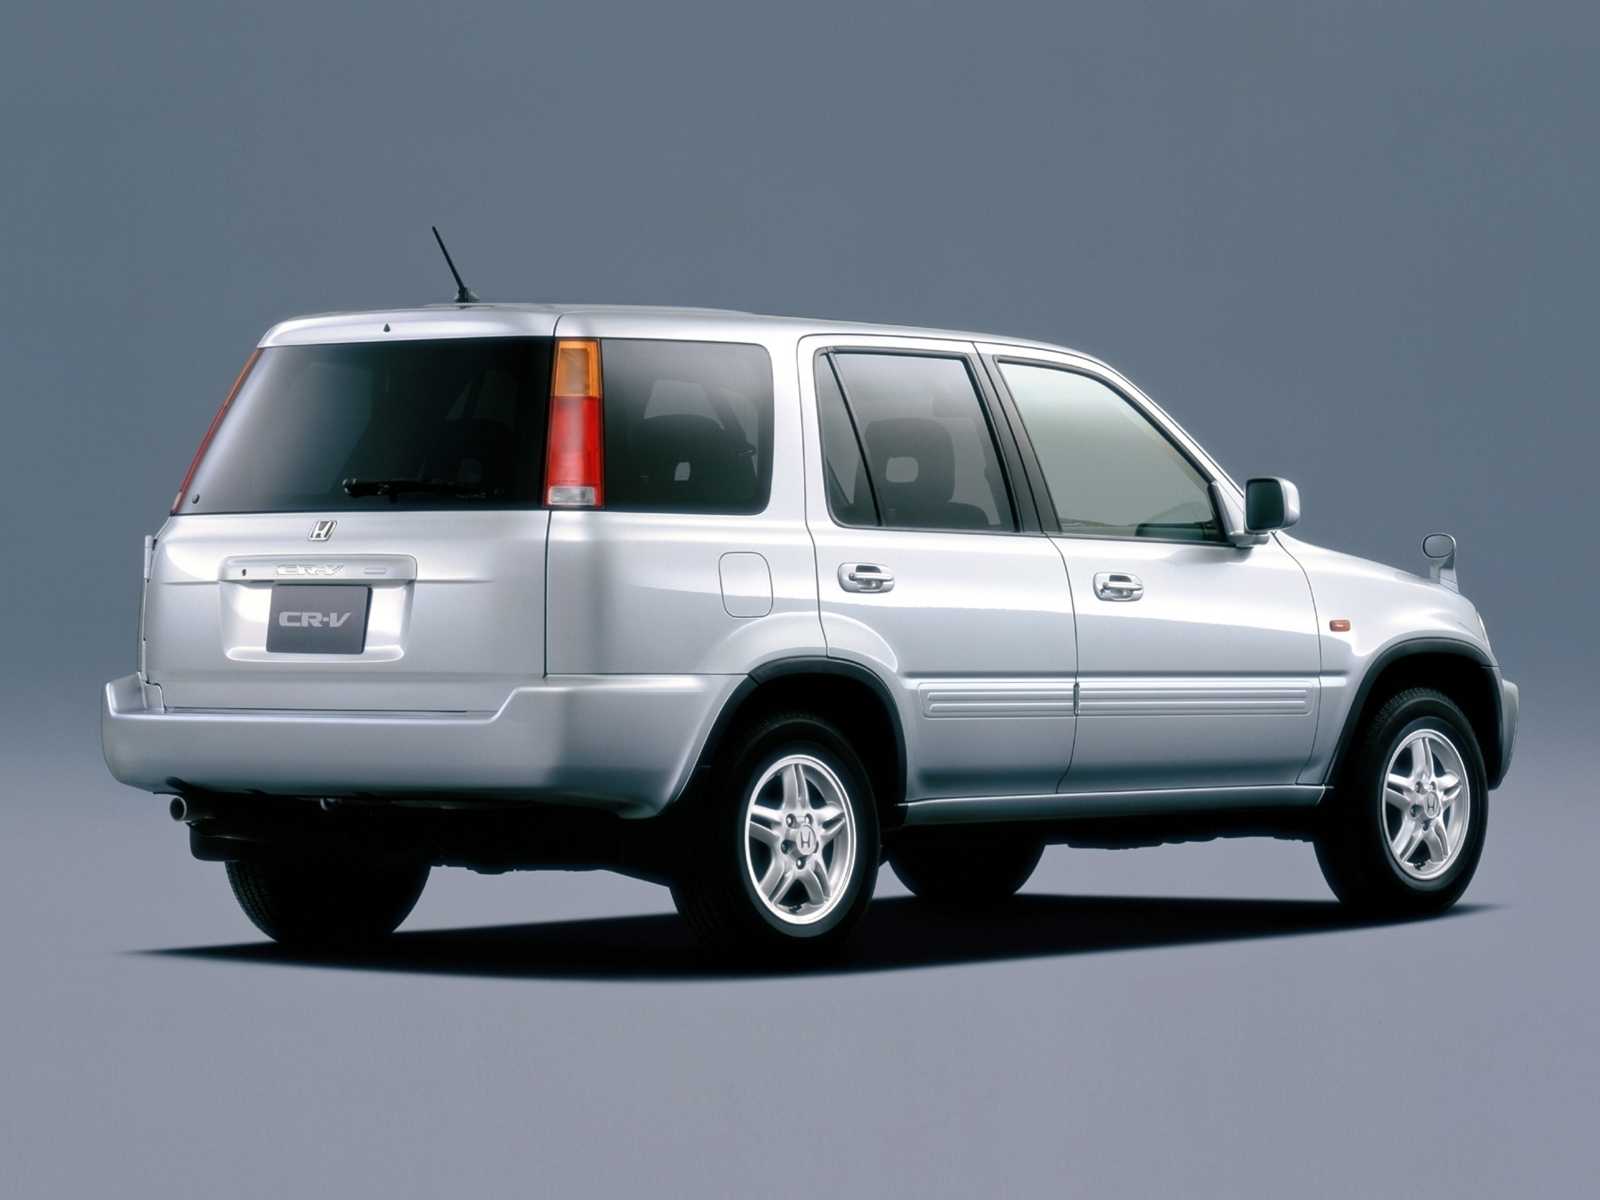 Honda cr-v первого поколения (описание и характеристики)